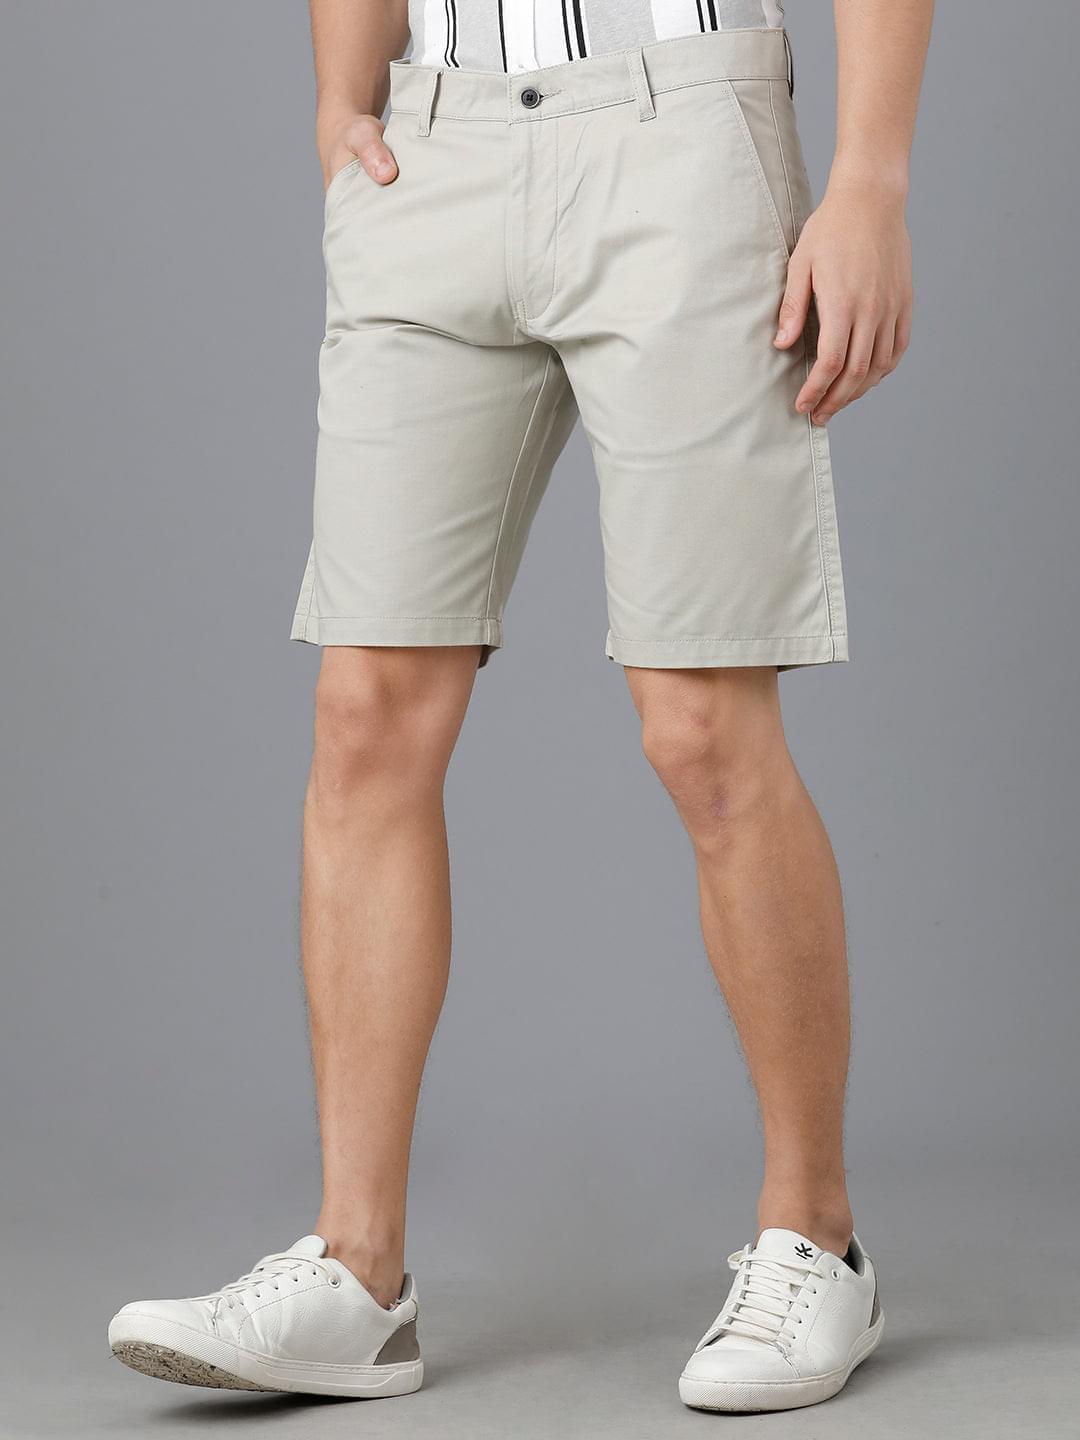 Grey polo shorts